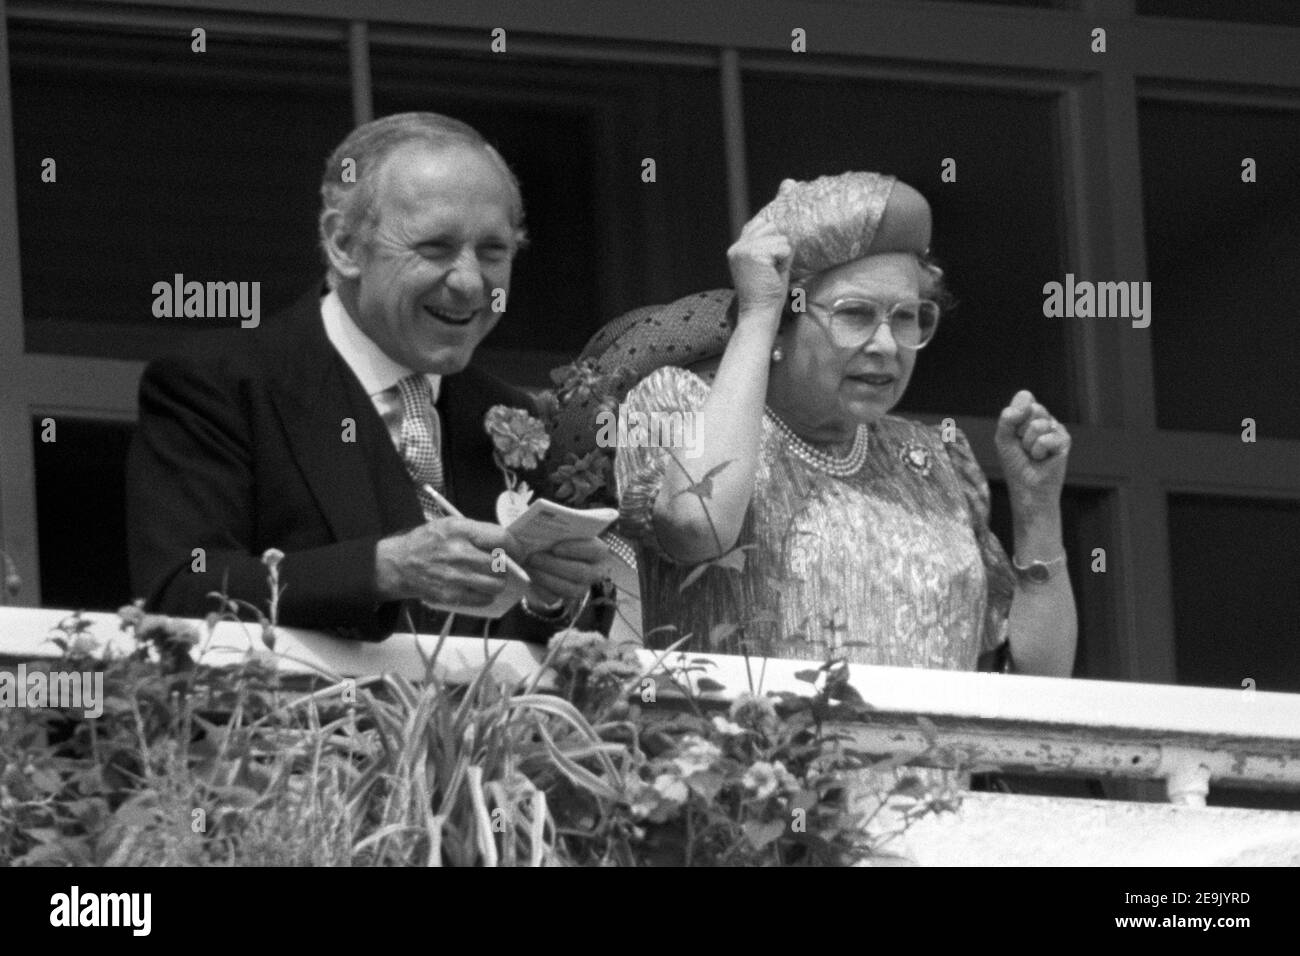 File foto datata 07/06/89 della Regina Elisabetta II che si acclama a cavallo con il segretario privato Sir William Heseltine dalla scatola reale all'Ippodromo di Epsom. La Regina regnerà come monarca per 69 anni il sabato. Foto Stock